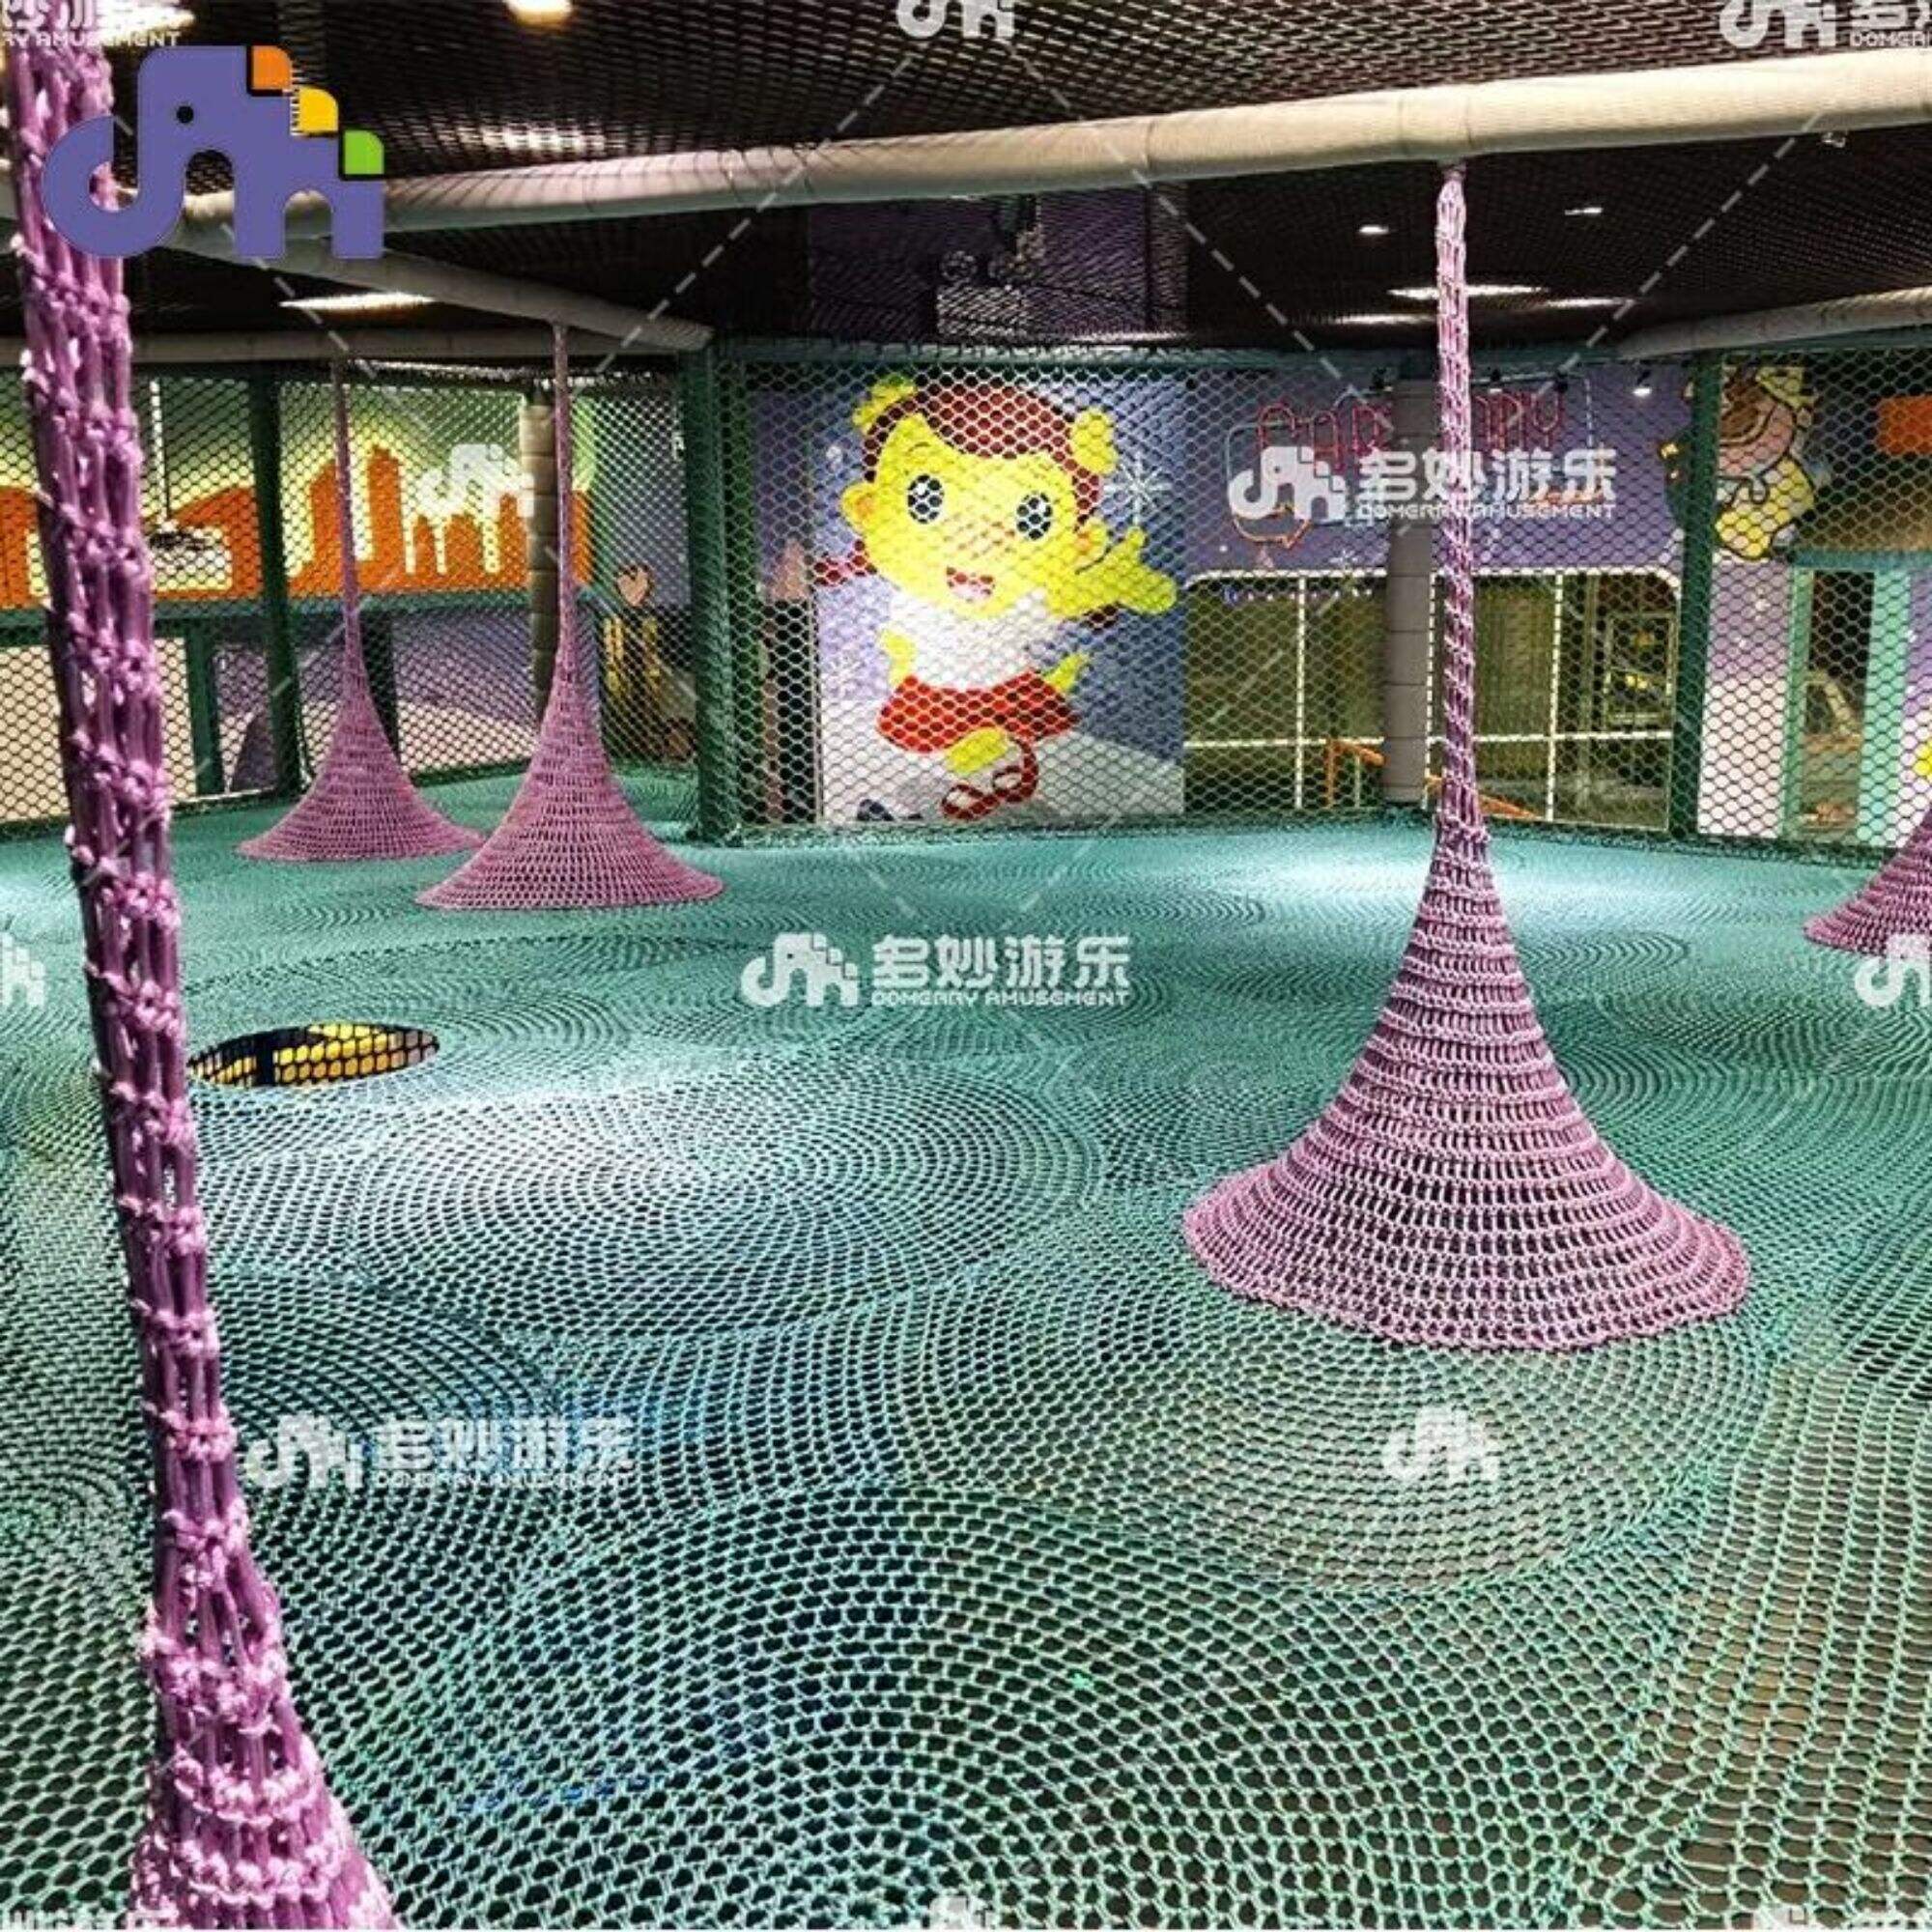 Rainbow Nets zachte, duurzame speeltoestellen Kleine indoor pretparkspeelset voor kinderen gemaakt van duurzaam nylon